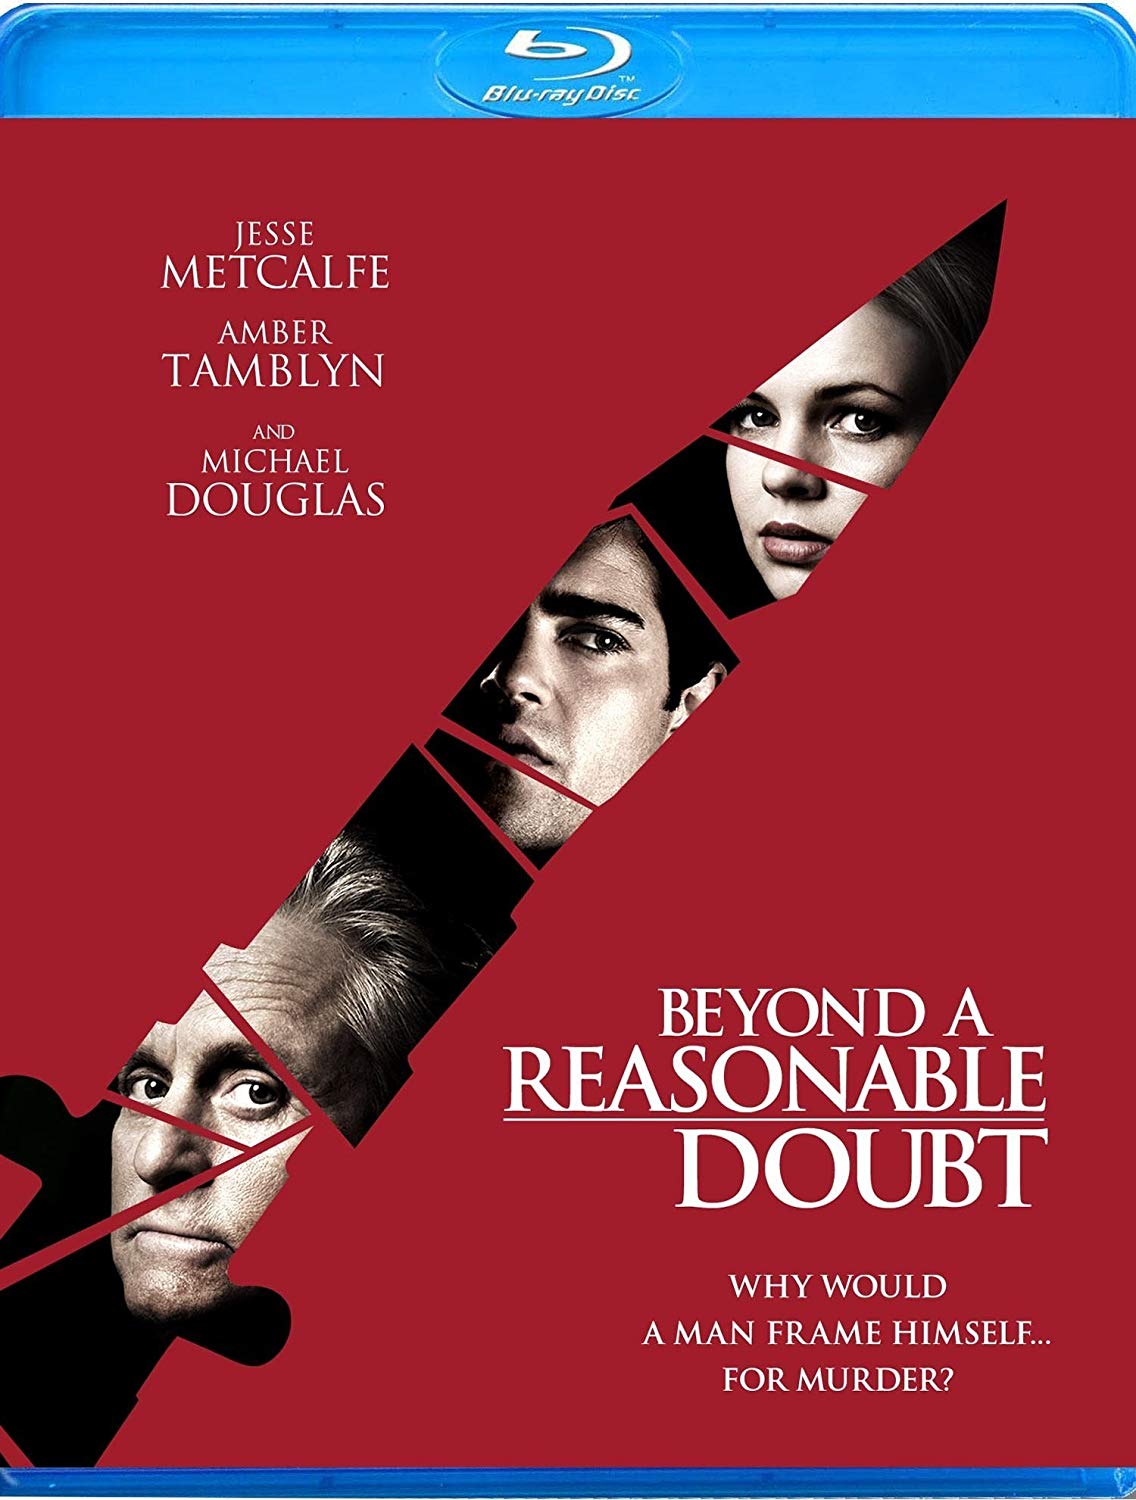 reasonable doubt mp3